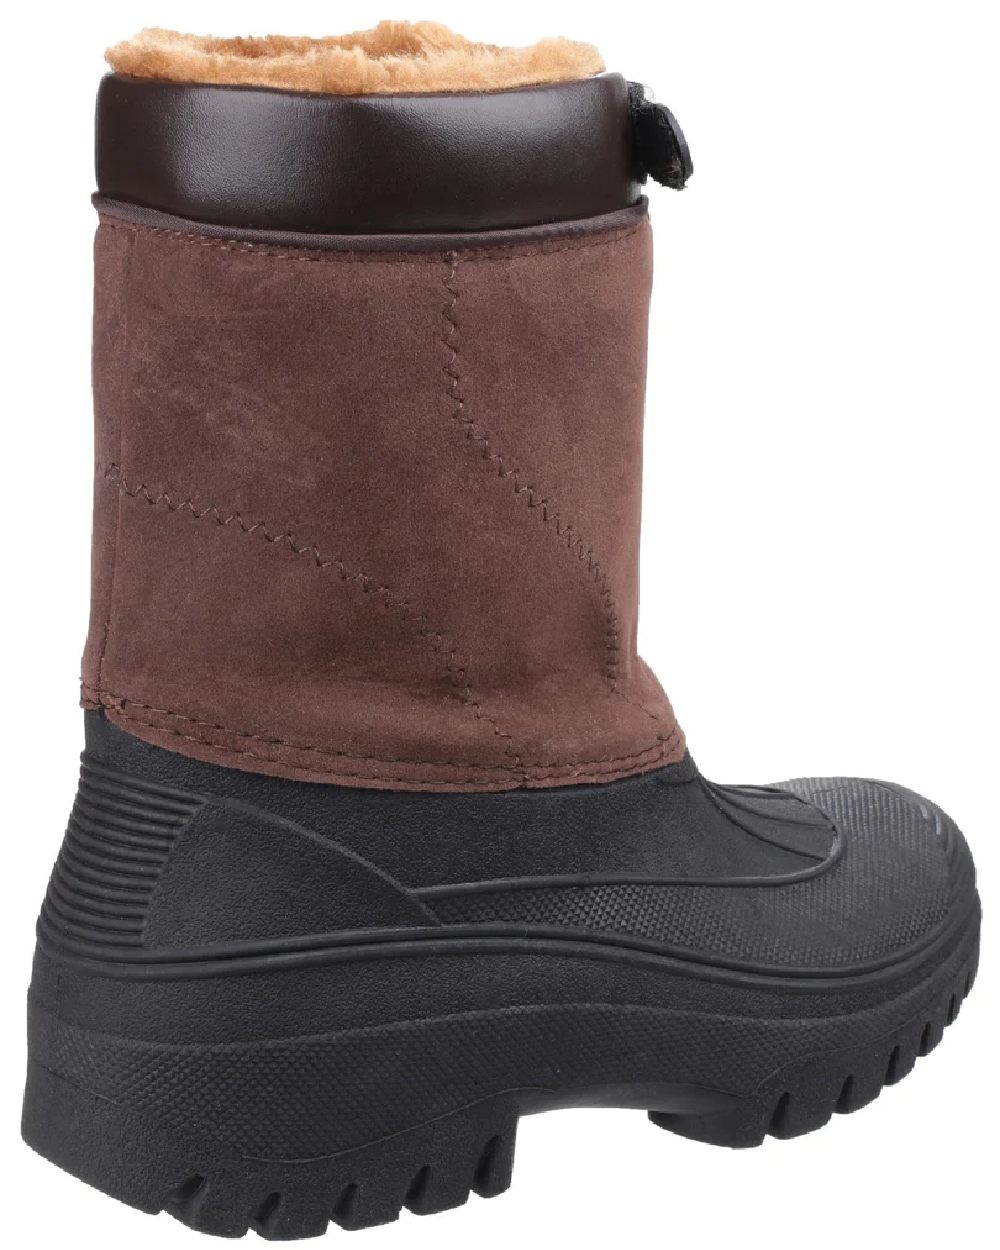 Cotswold Mens Venture Waterproof Winter Boots in Brown 